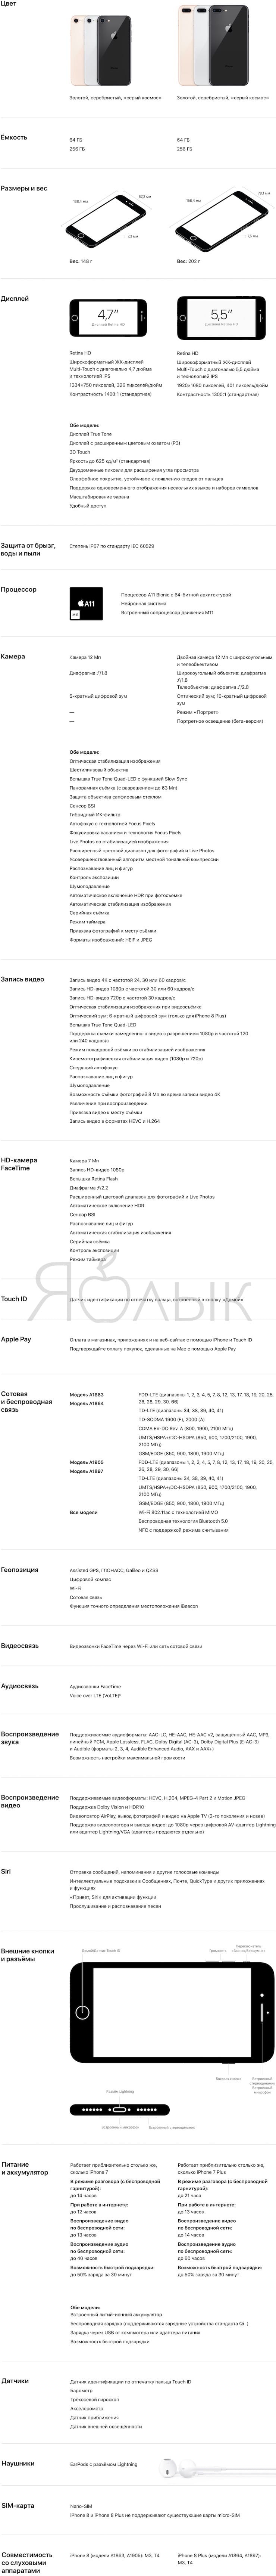 Спецификации (технические характеристики) iPhone 8